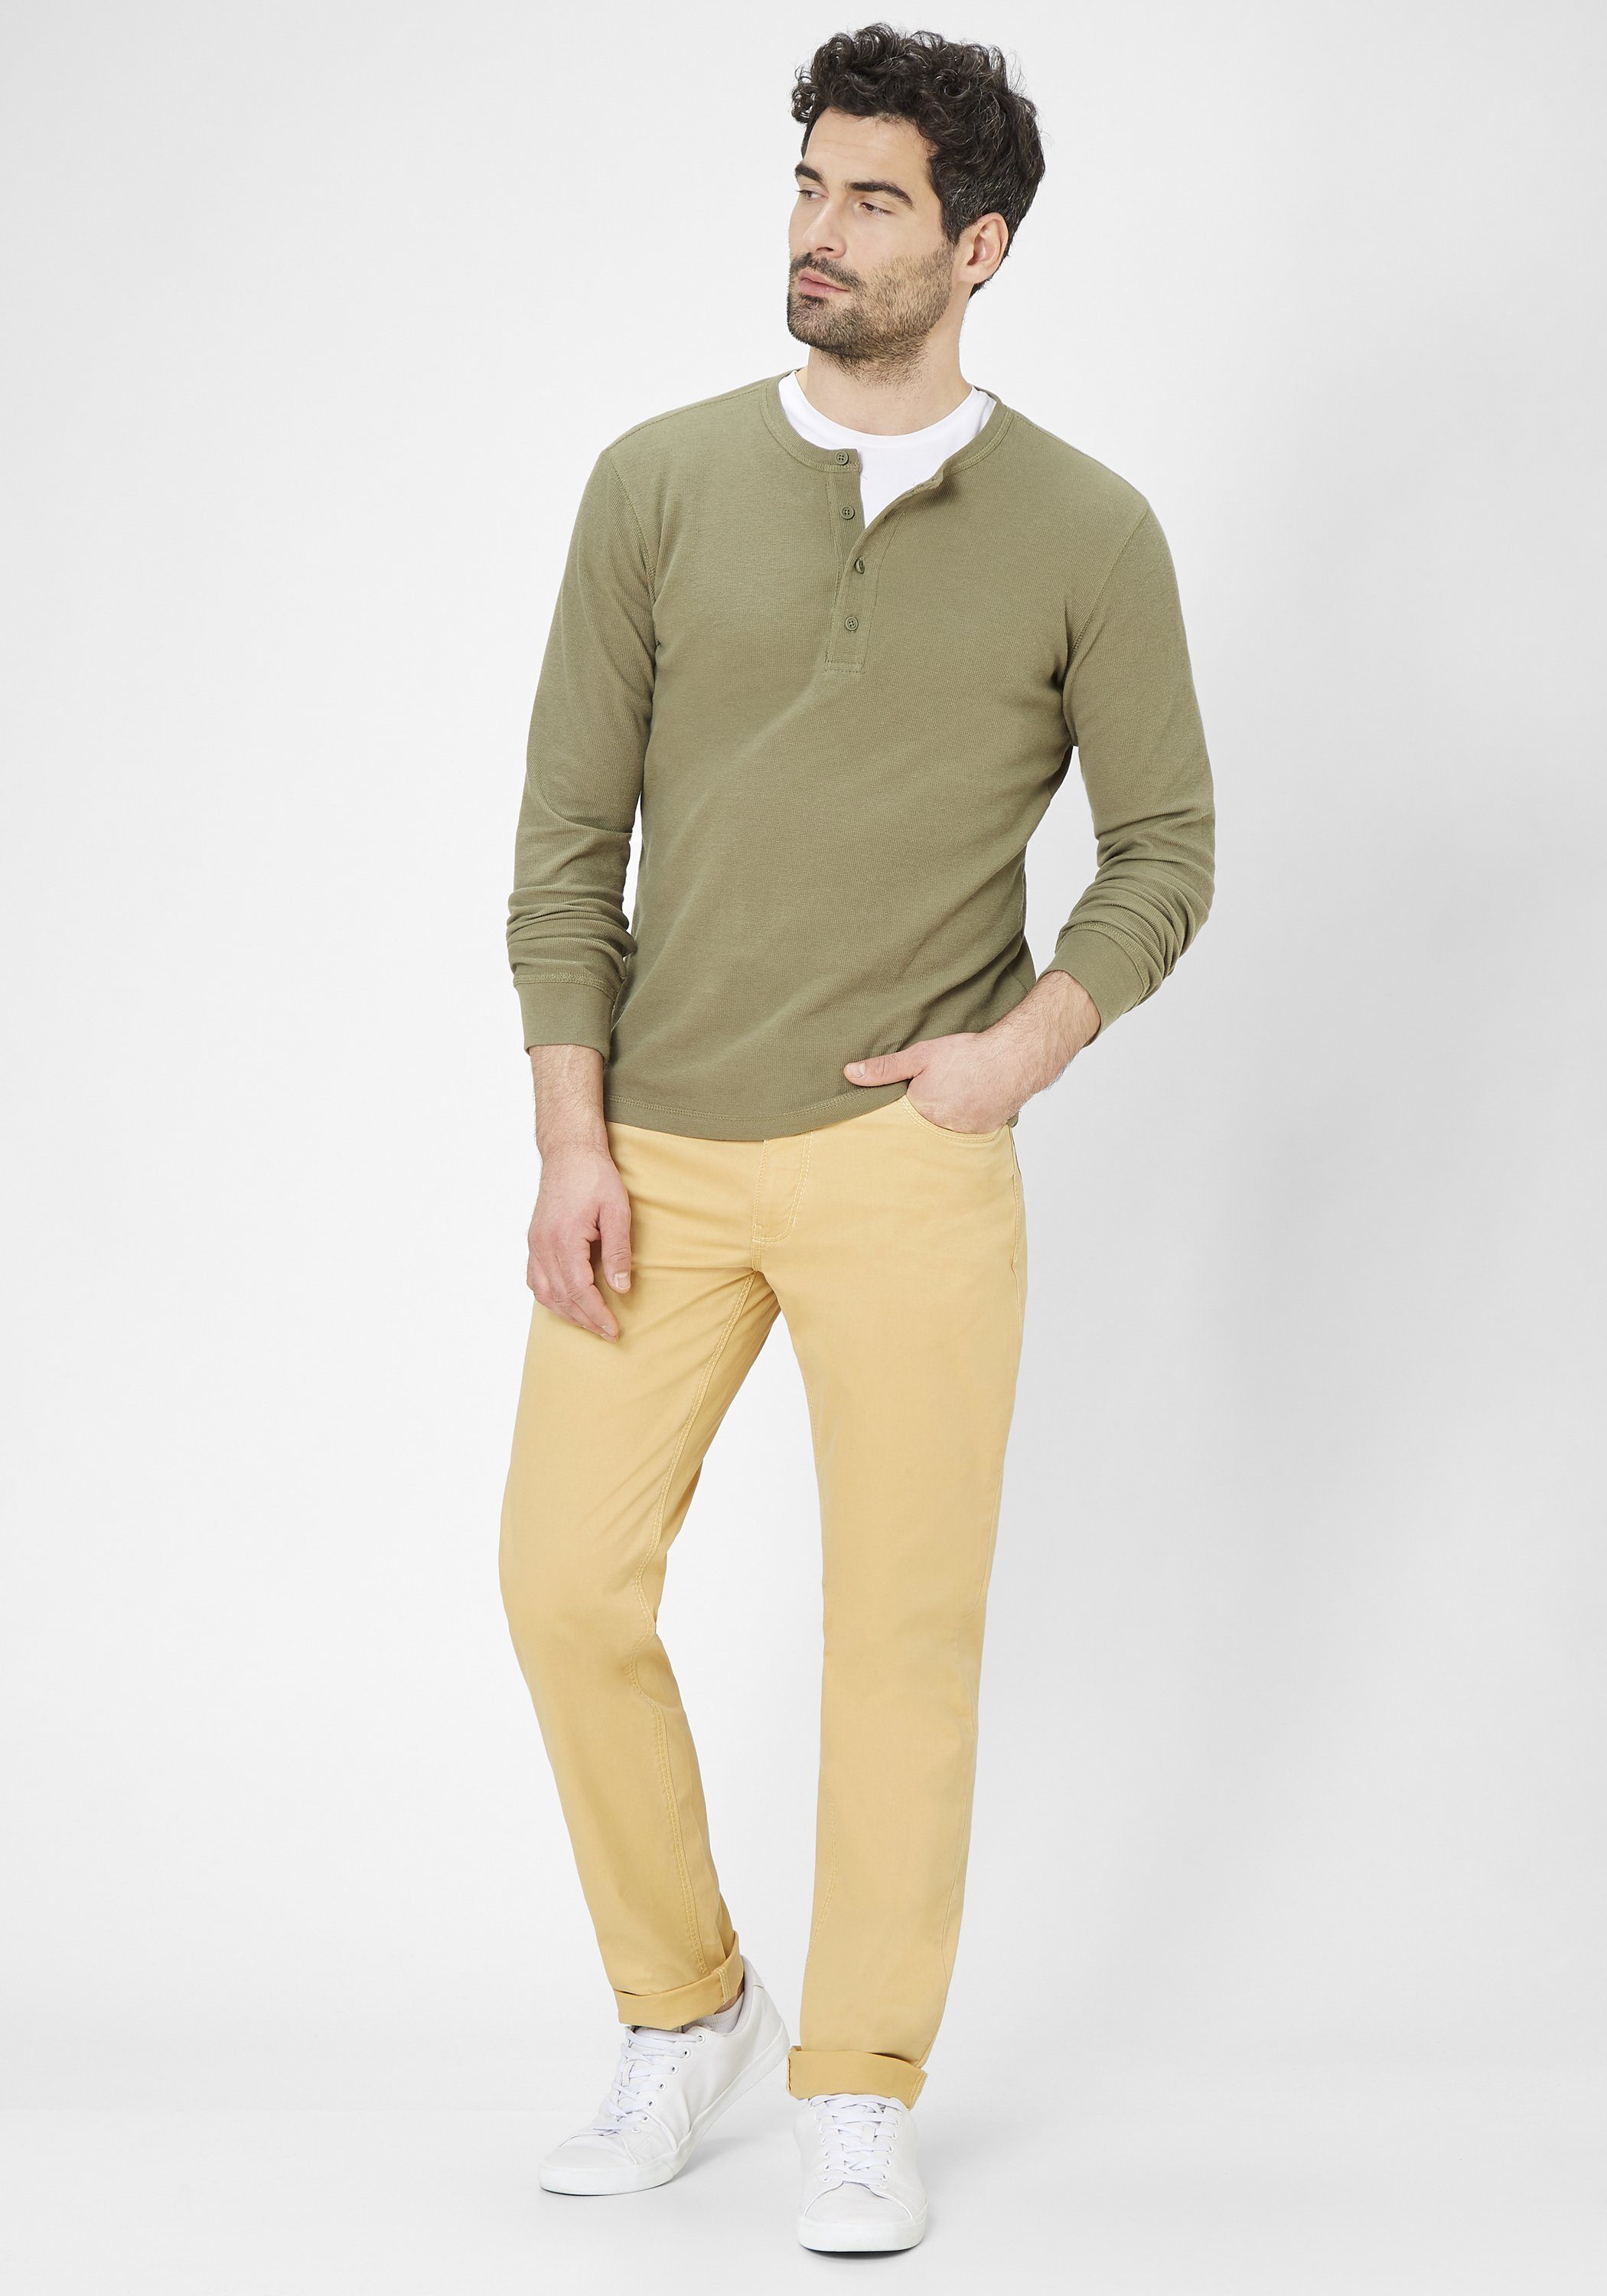 Redpoint Stoffhose MILTON super stretch Baumwolle yellow Pocket nachaltiger 5 aus